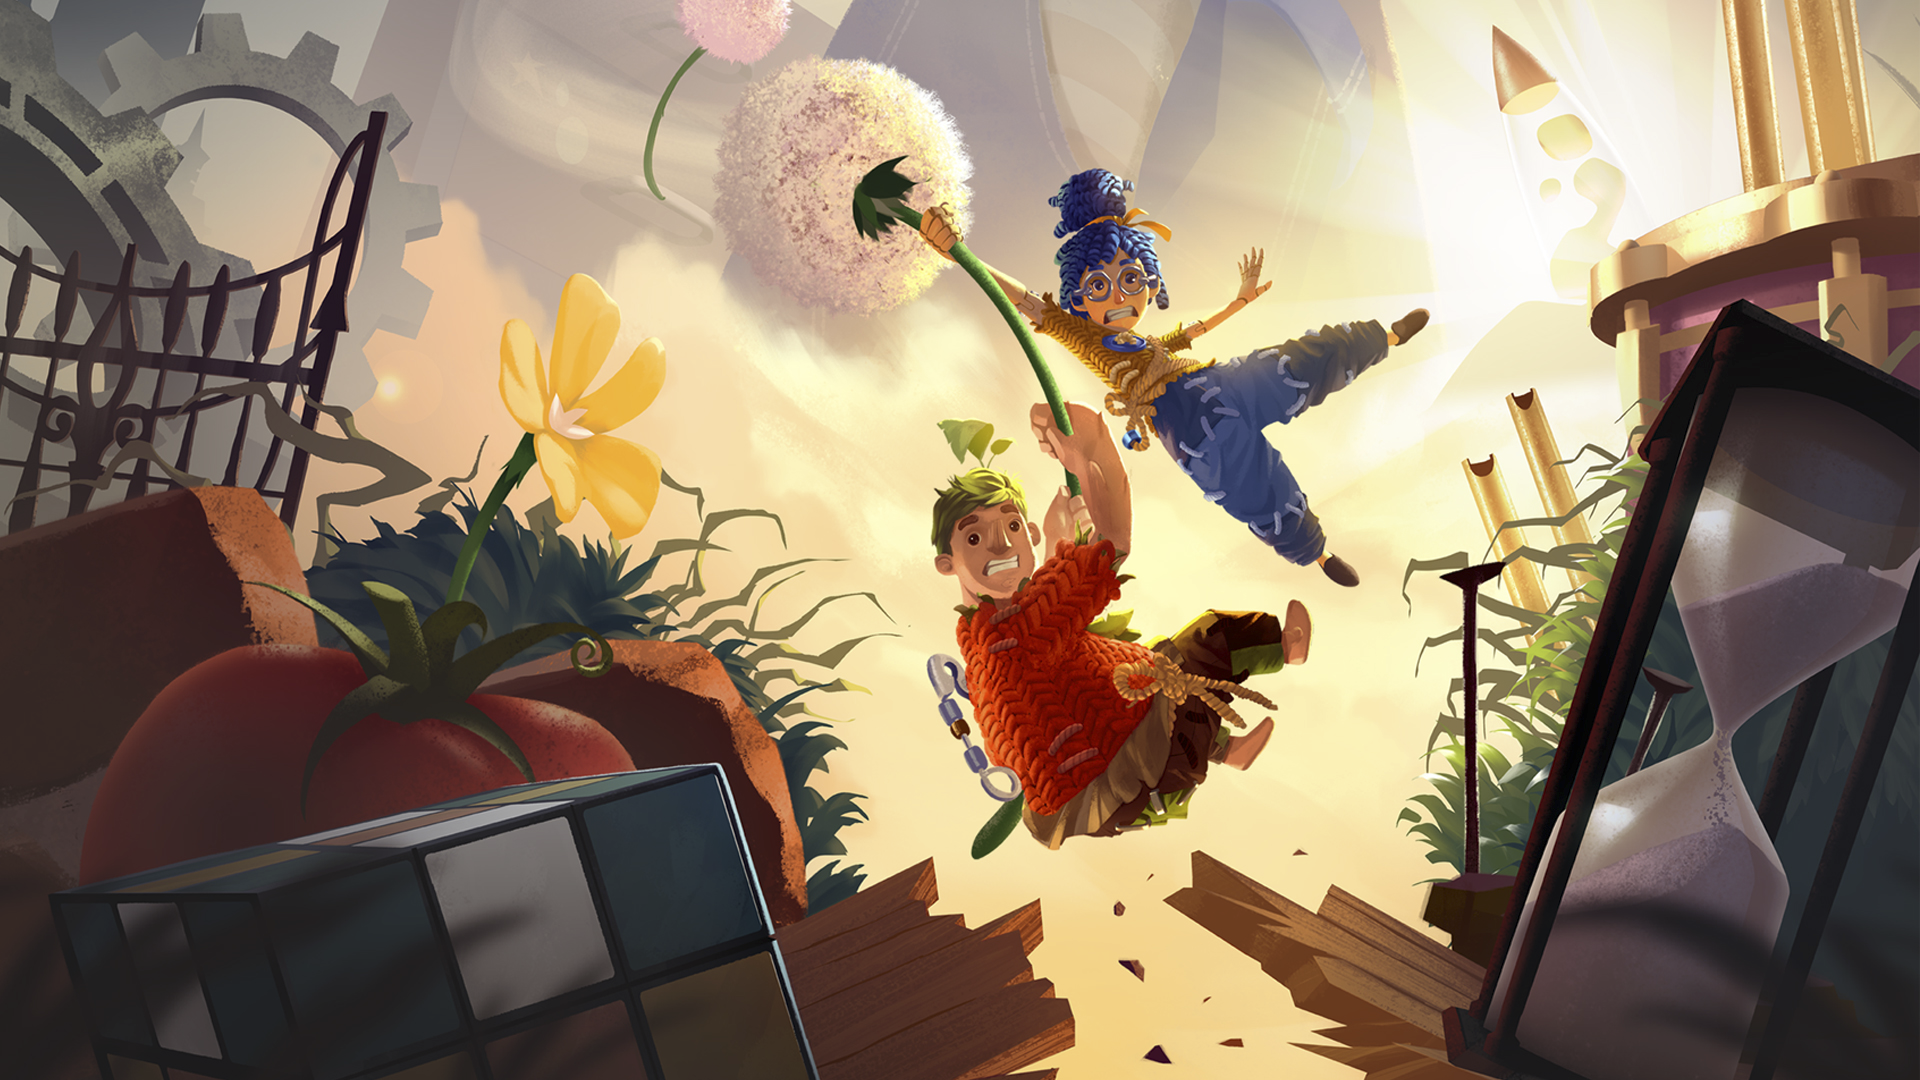 It Takes Two ana görseli, bir hindiba çiçeğinin üzerindeki ana karakterler May ve Cody’nin havada süzülmesine yer veriyor.